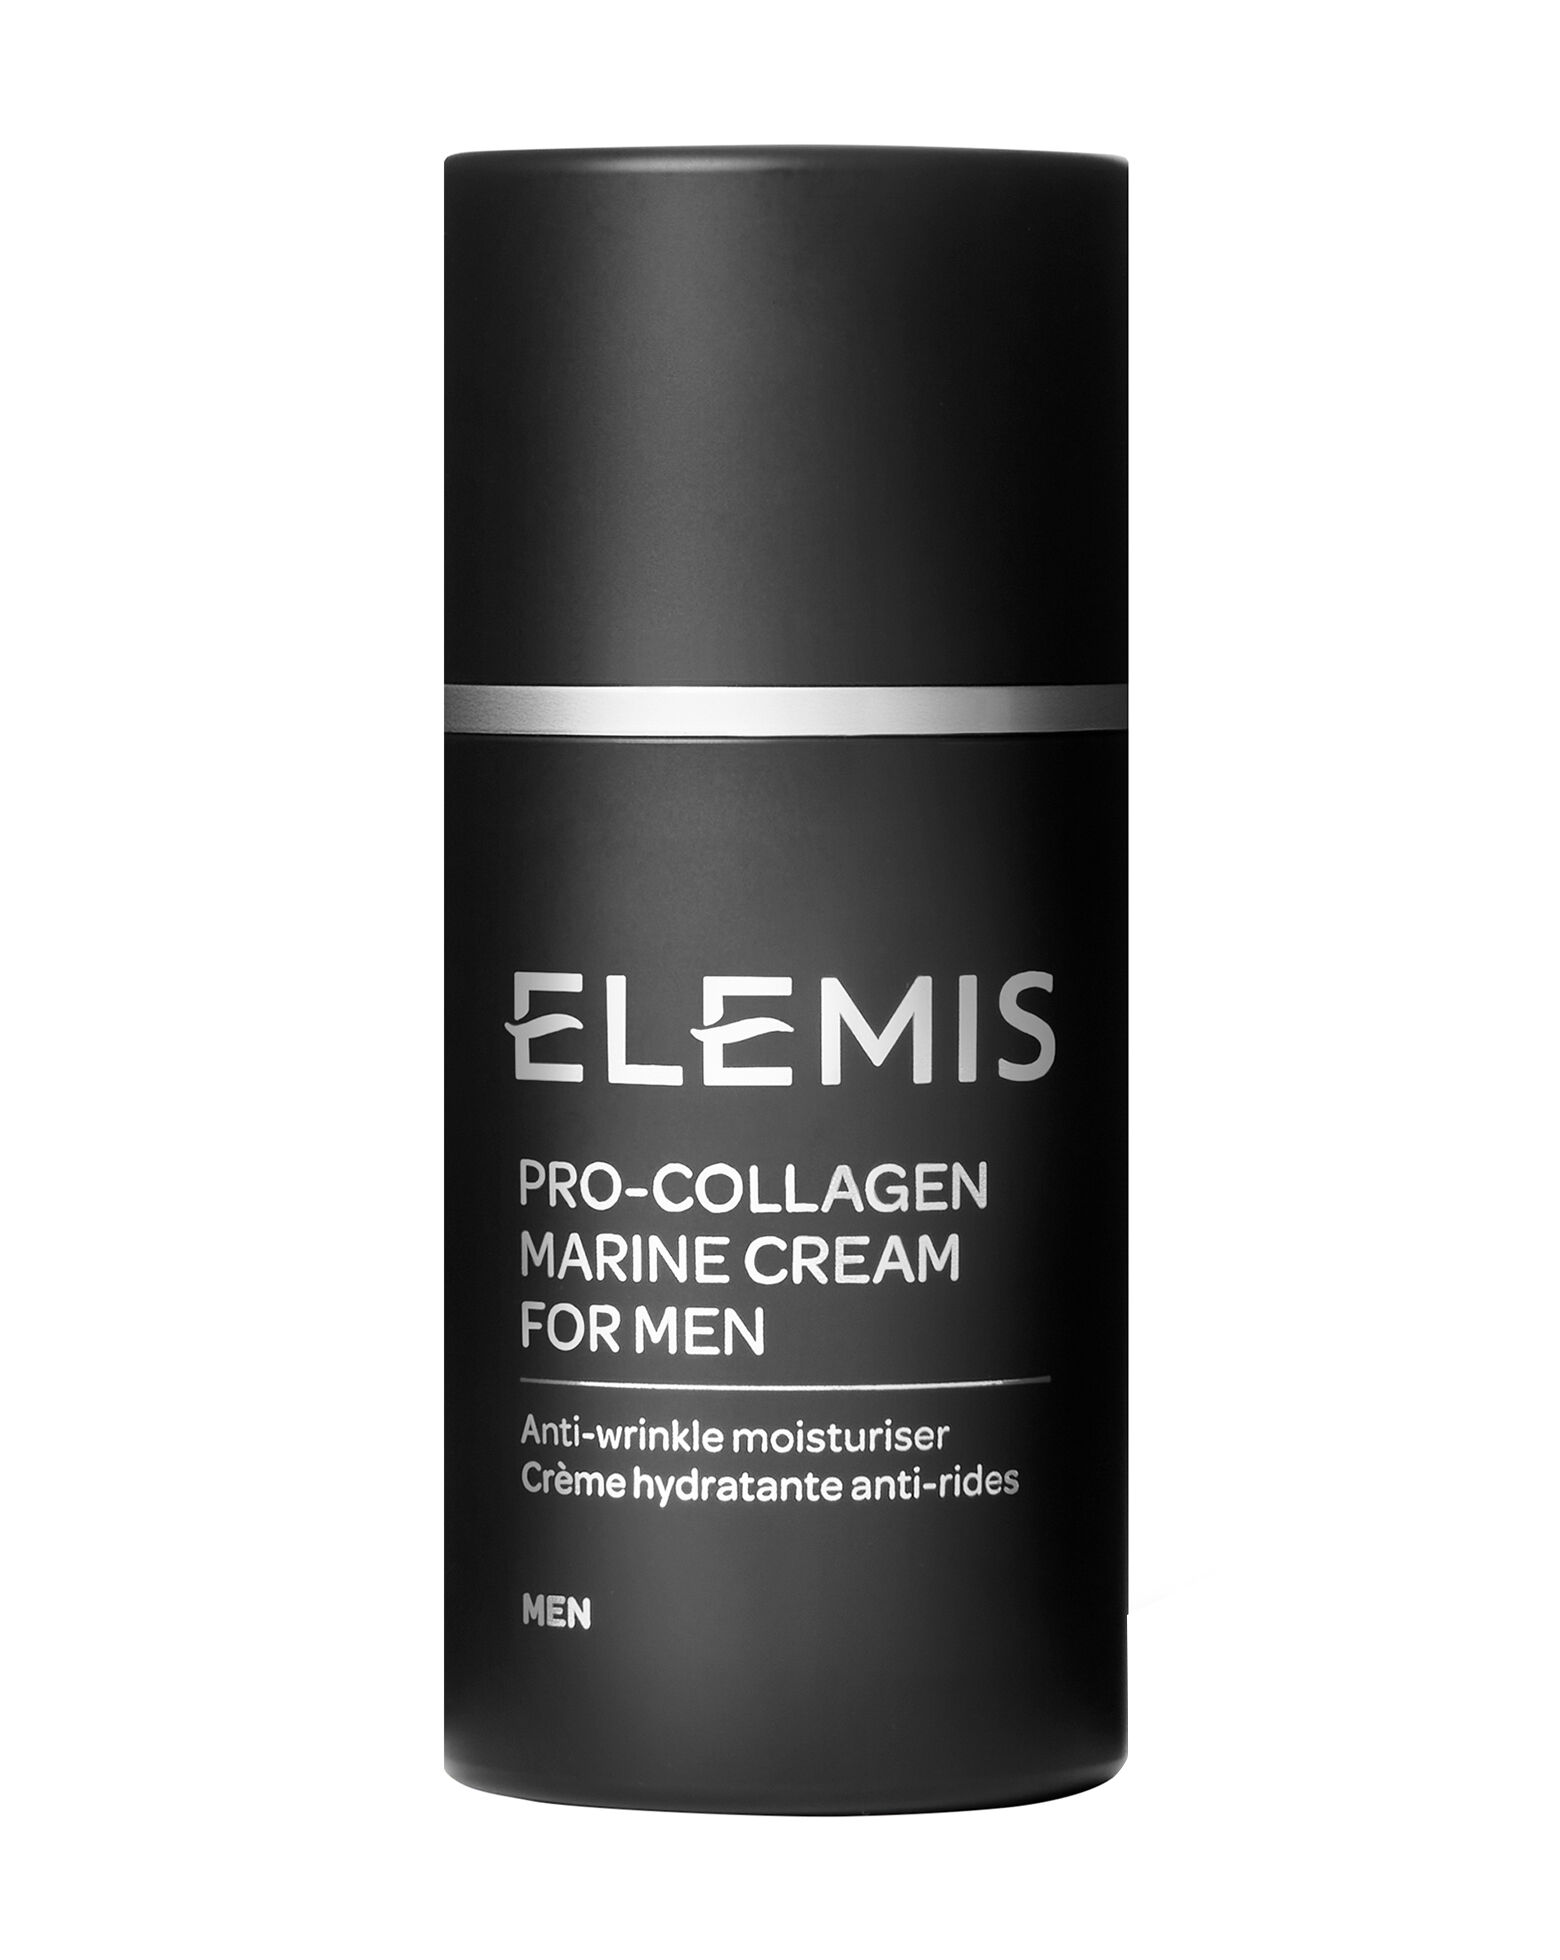 ELEMIS - Pro-Collagen Marine Cream for Men